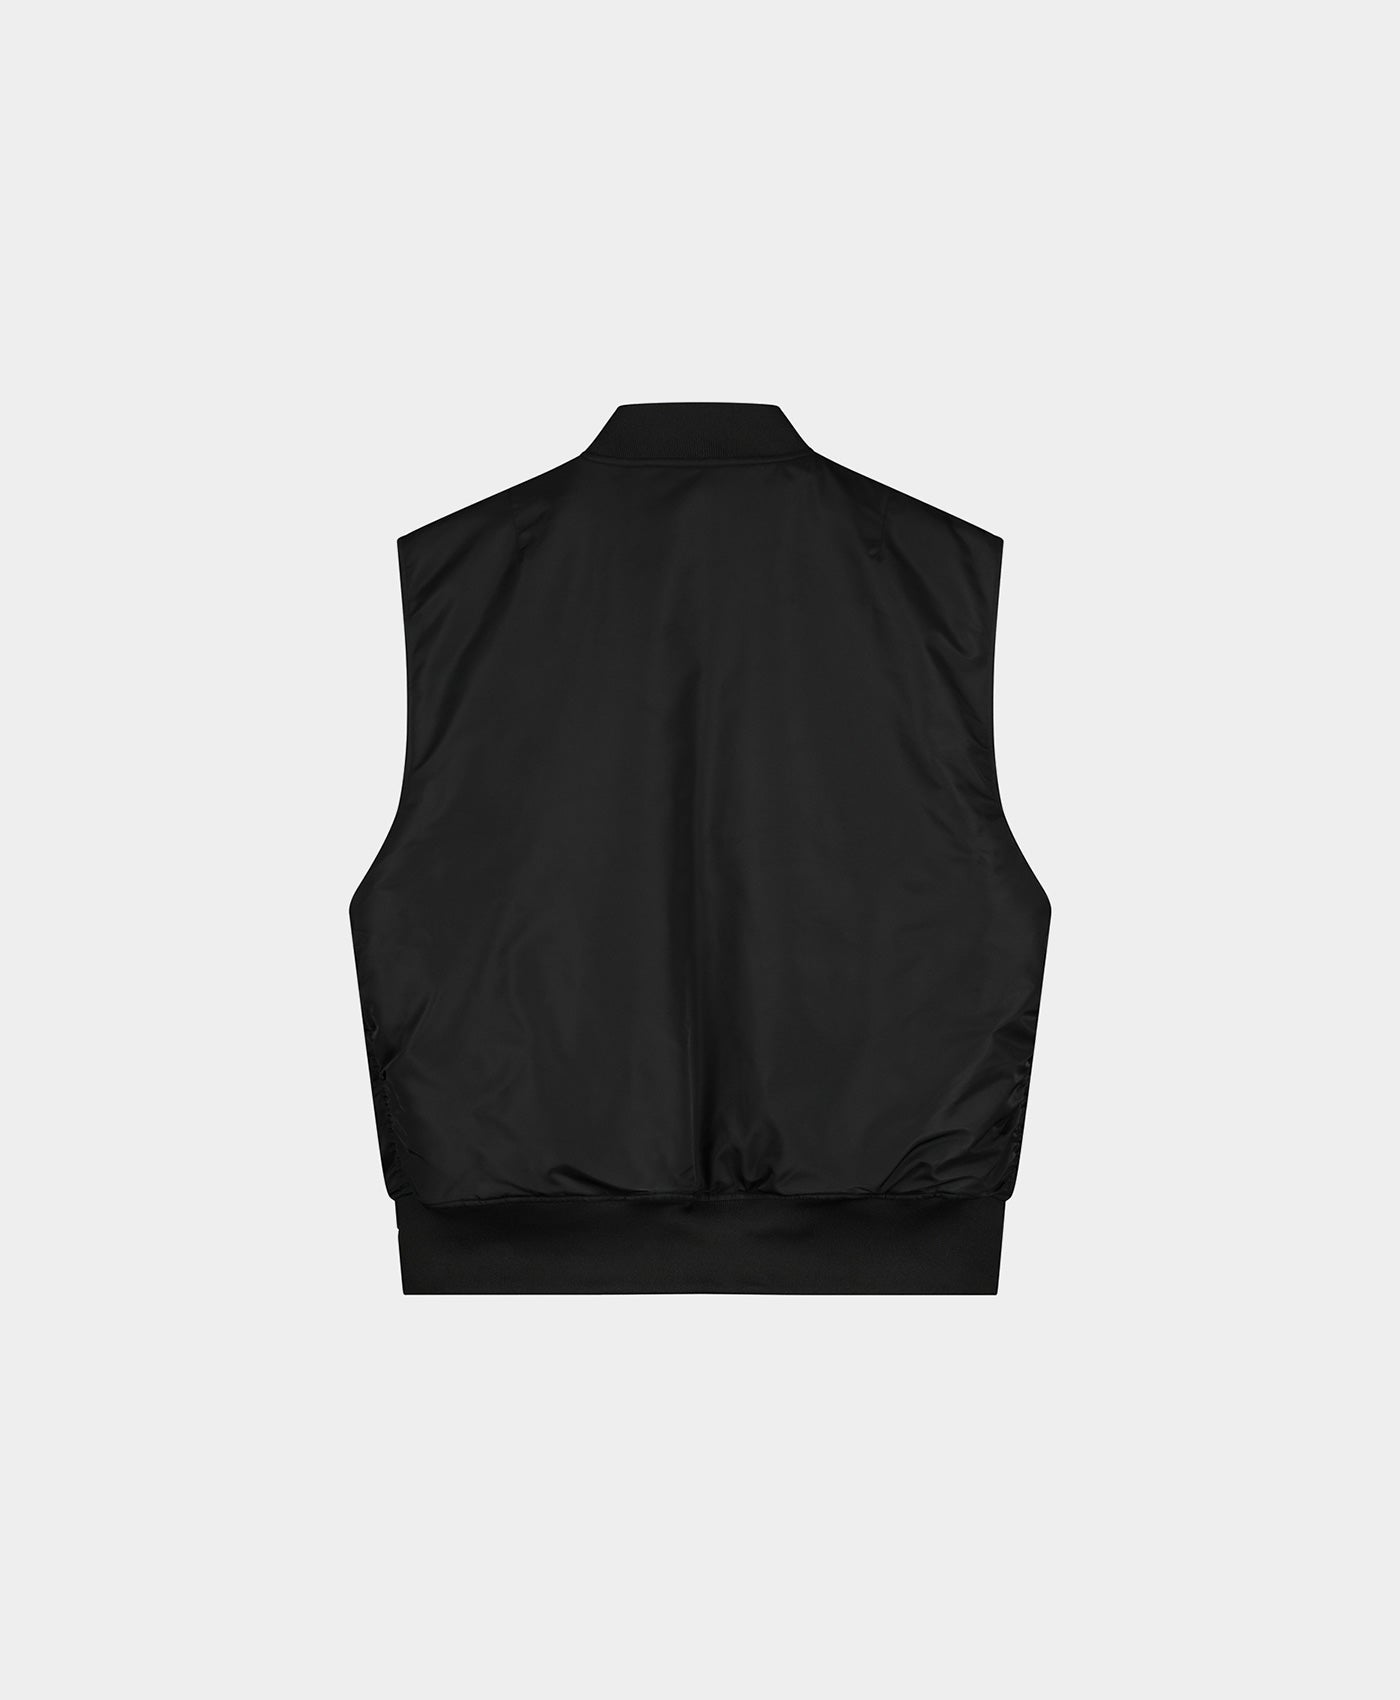 DP - Black Levon Vest - Packshot - Rear